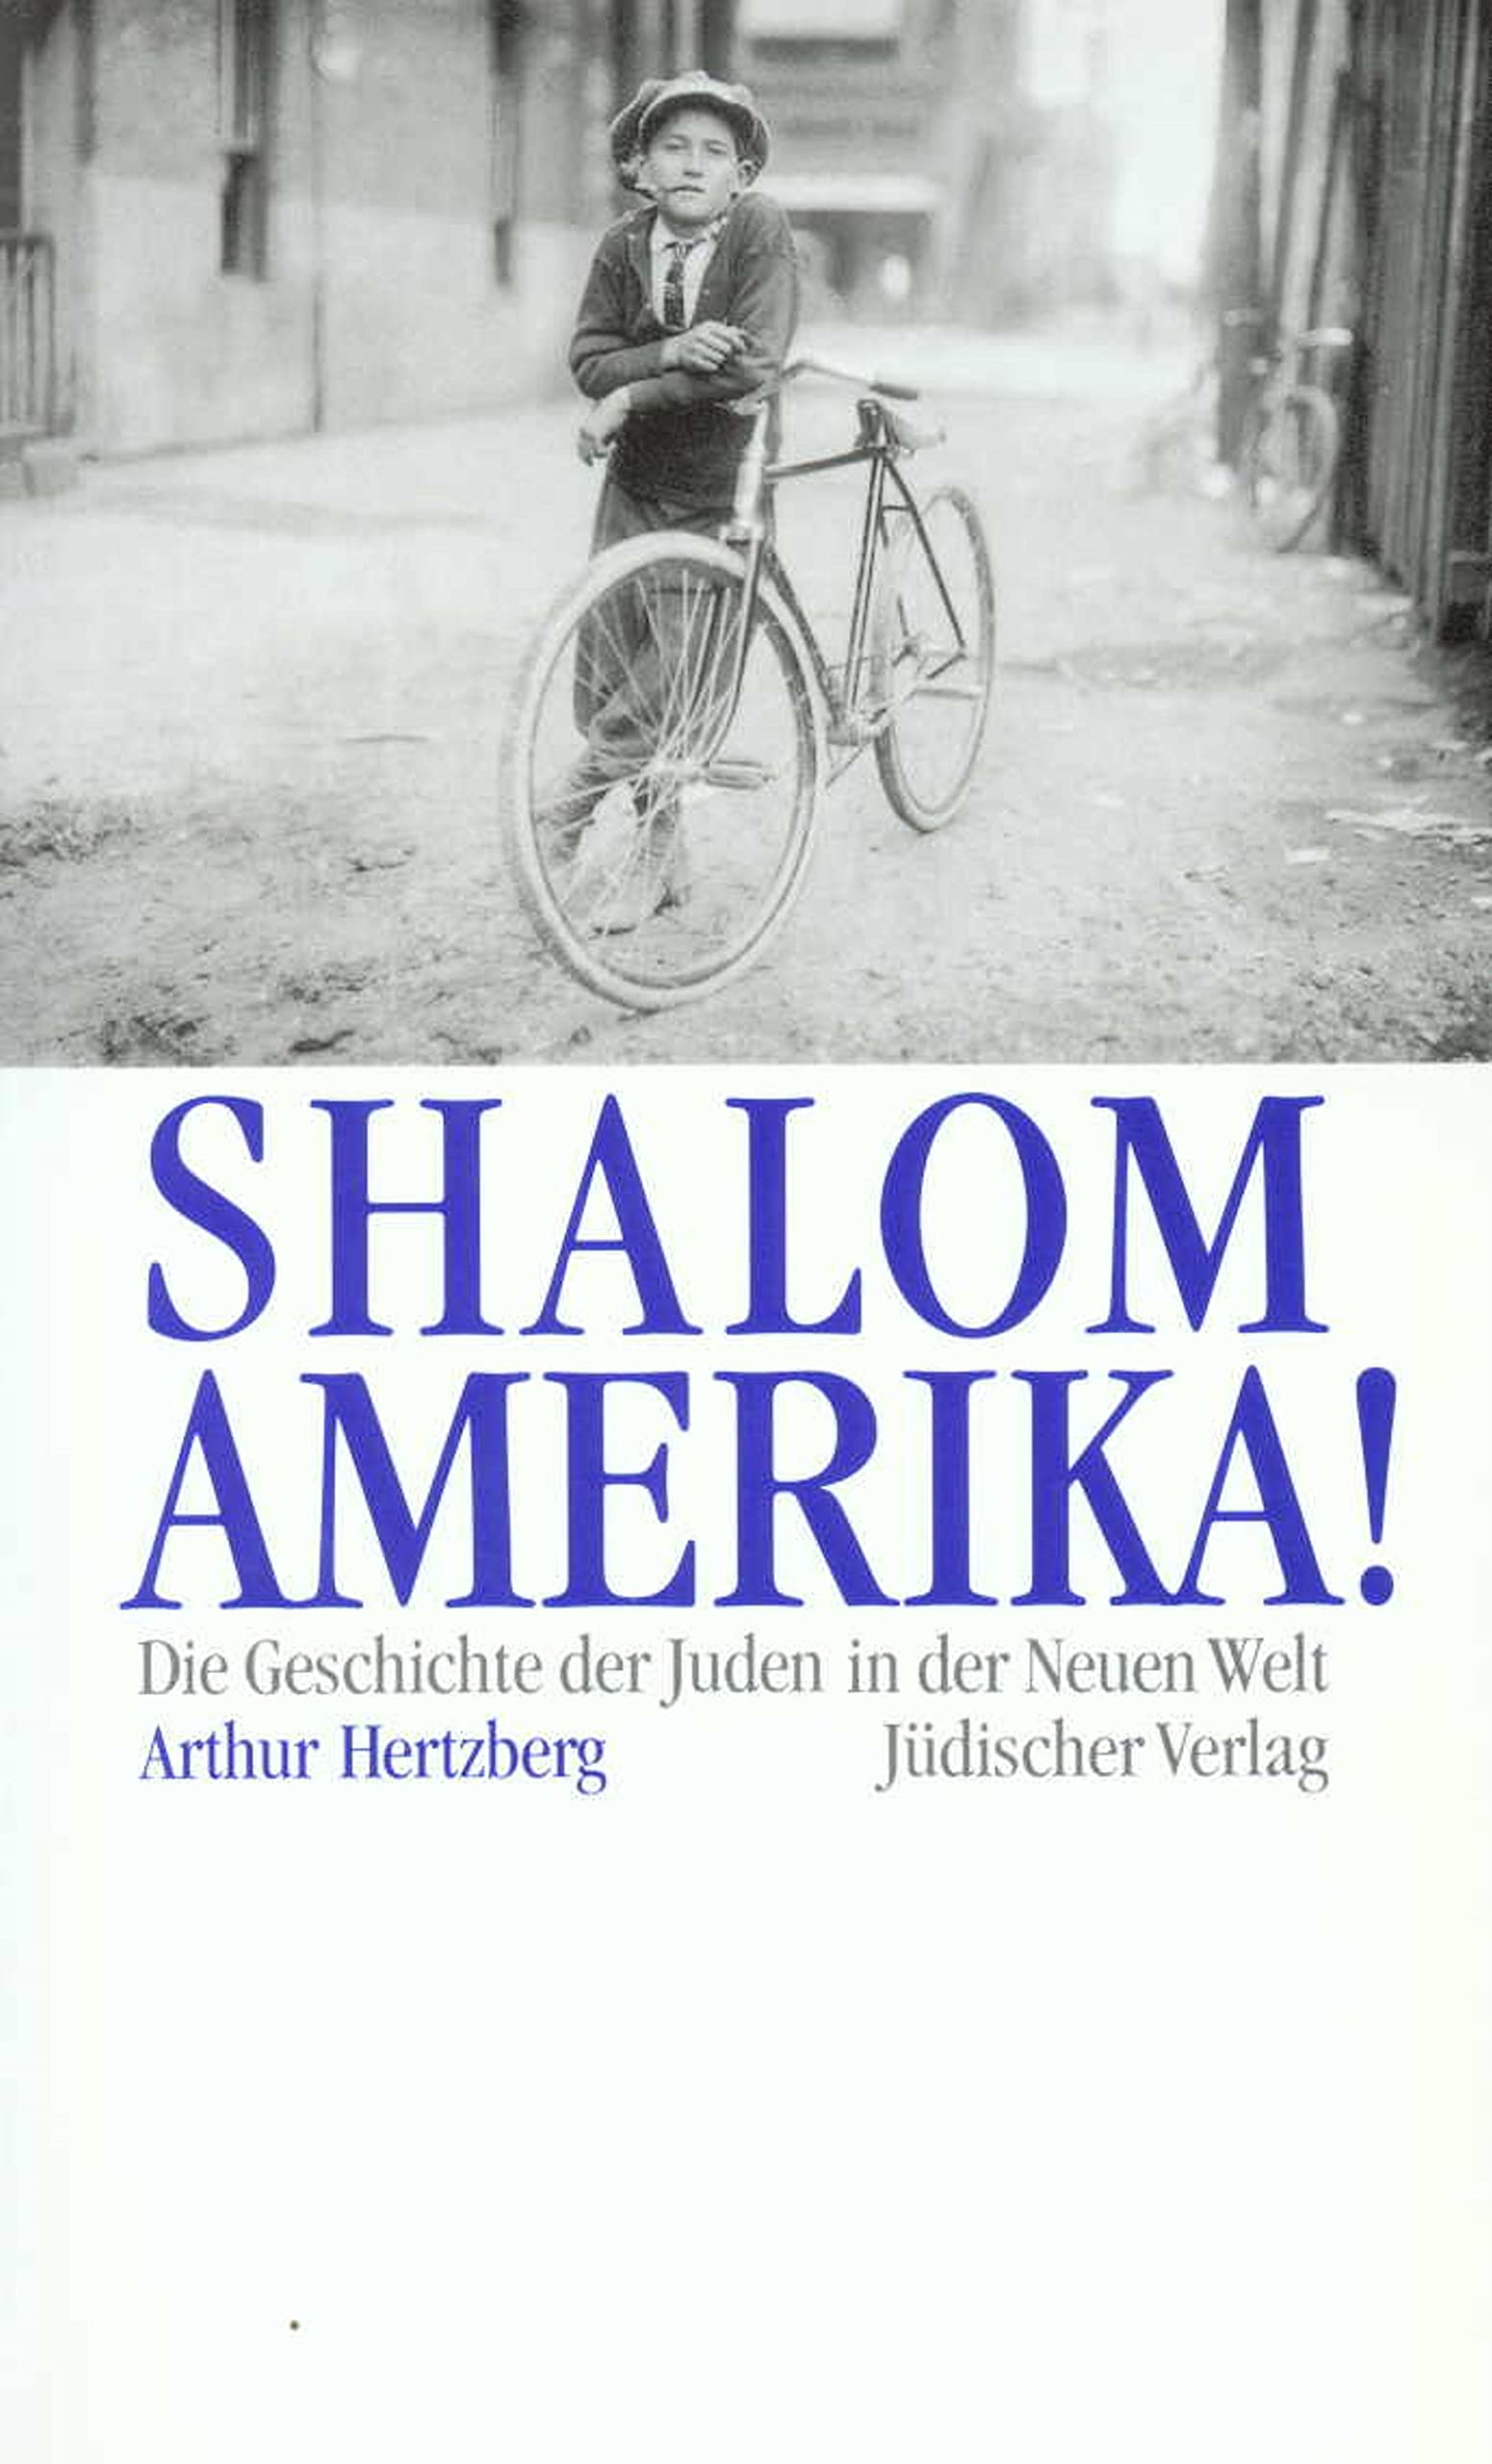 Shalom, Amerika! Die Geschichte der Juden in der Neuen Welt. - Hertzberg, Arthur